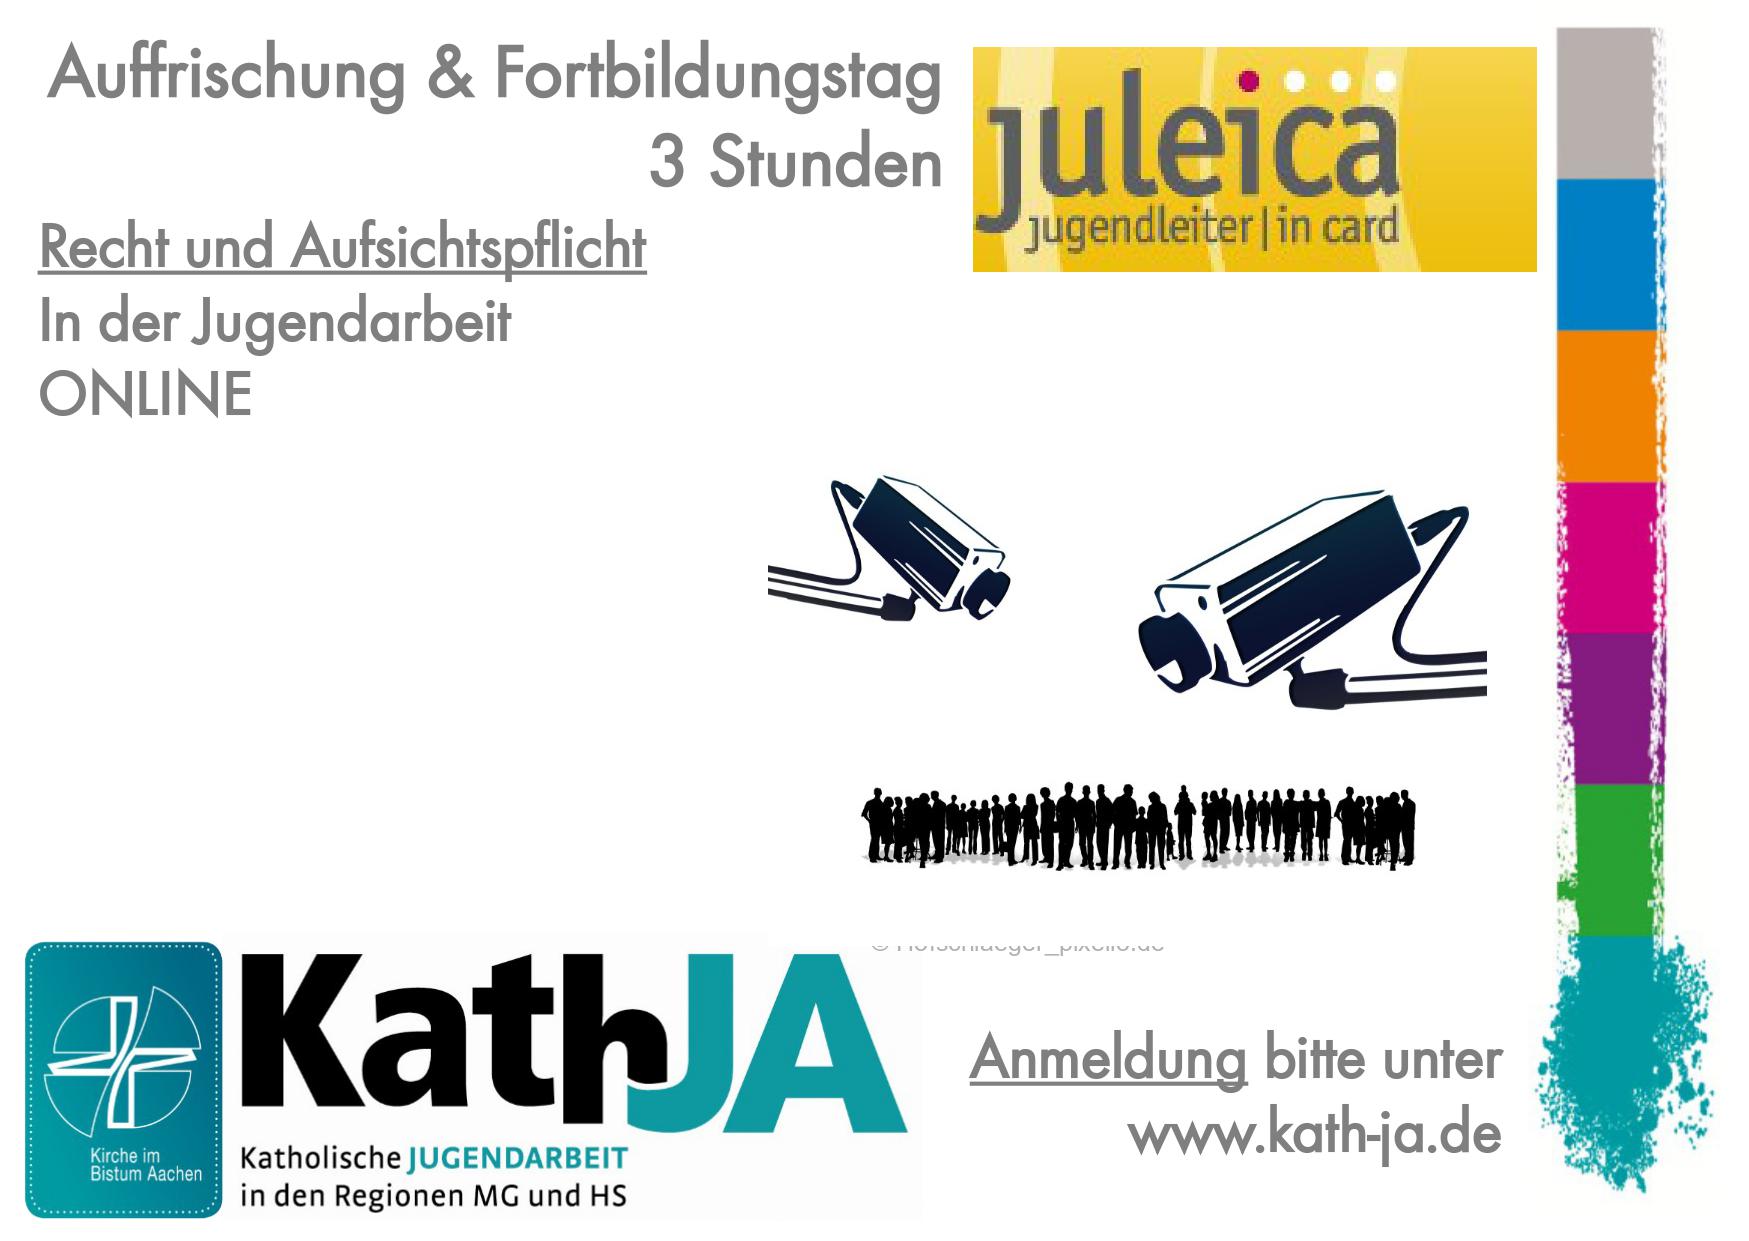 22-02-10 Recht und Aufsichtspflicht Werbeflyer Seite 1 (c) KathJA